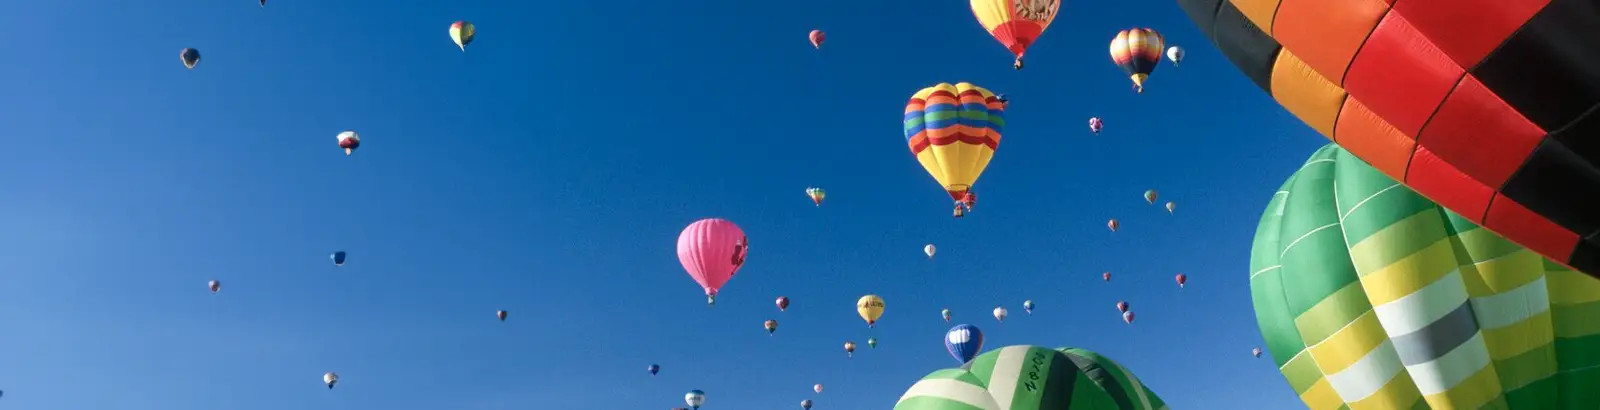 Fotografie einer Vielzahl bunter Heißluftballons schwebt am satt blauen Himmel.